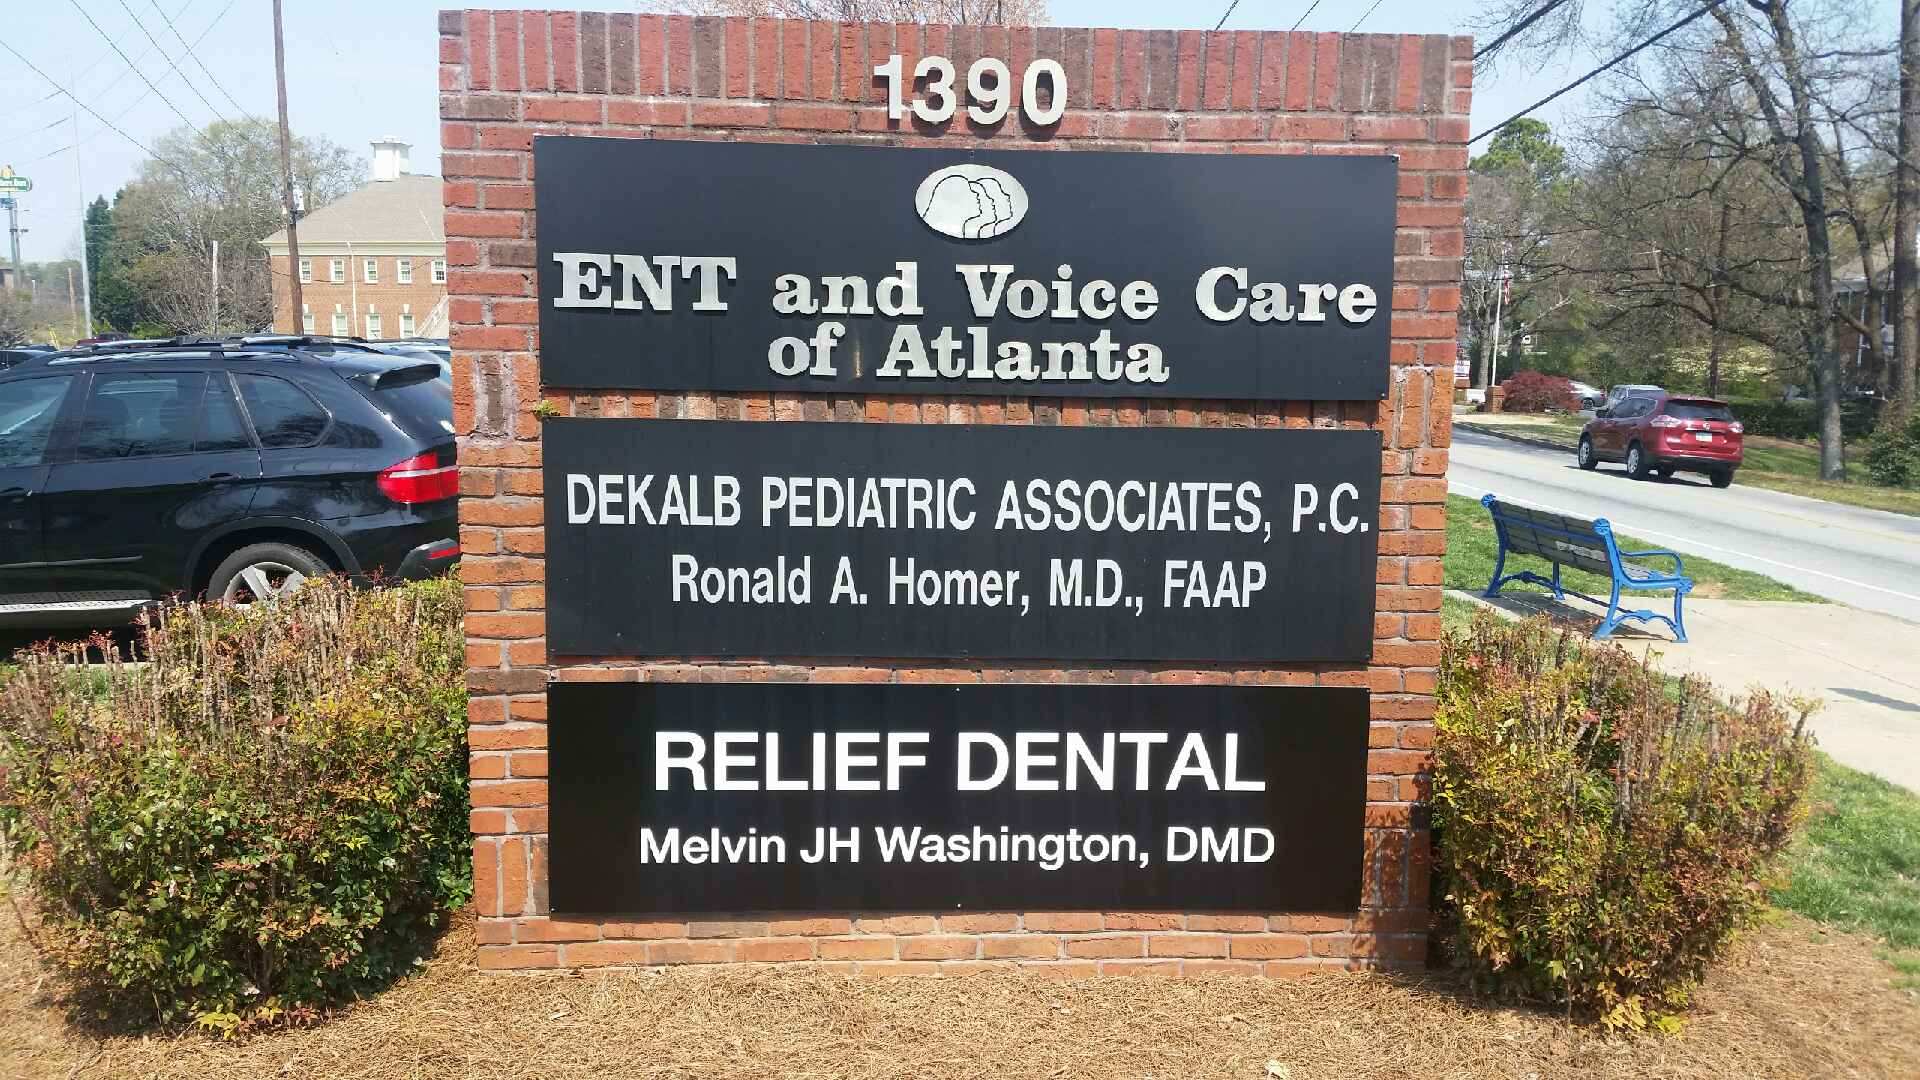 Roadside dental sign